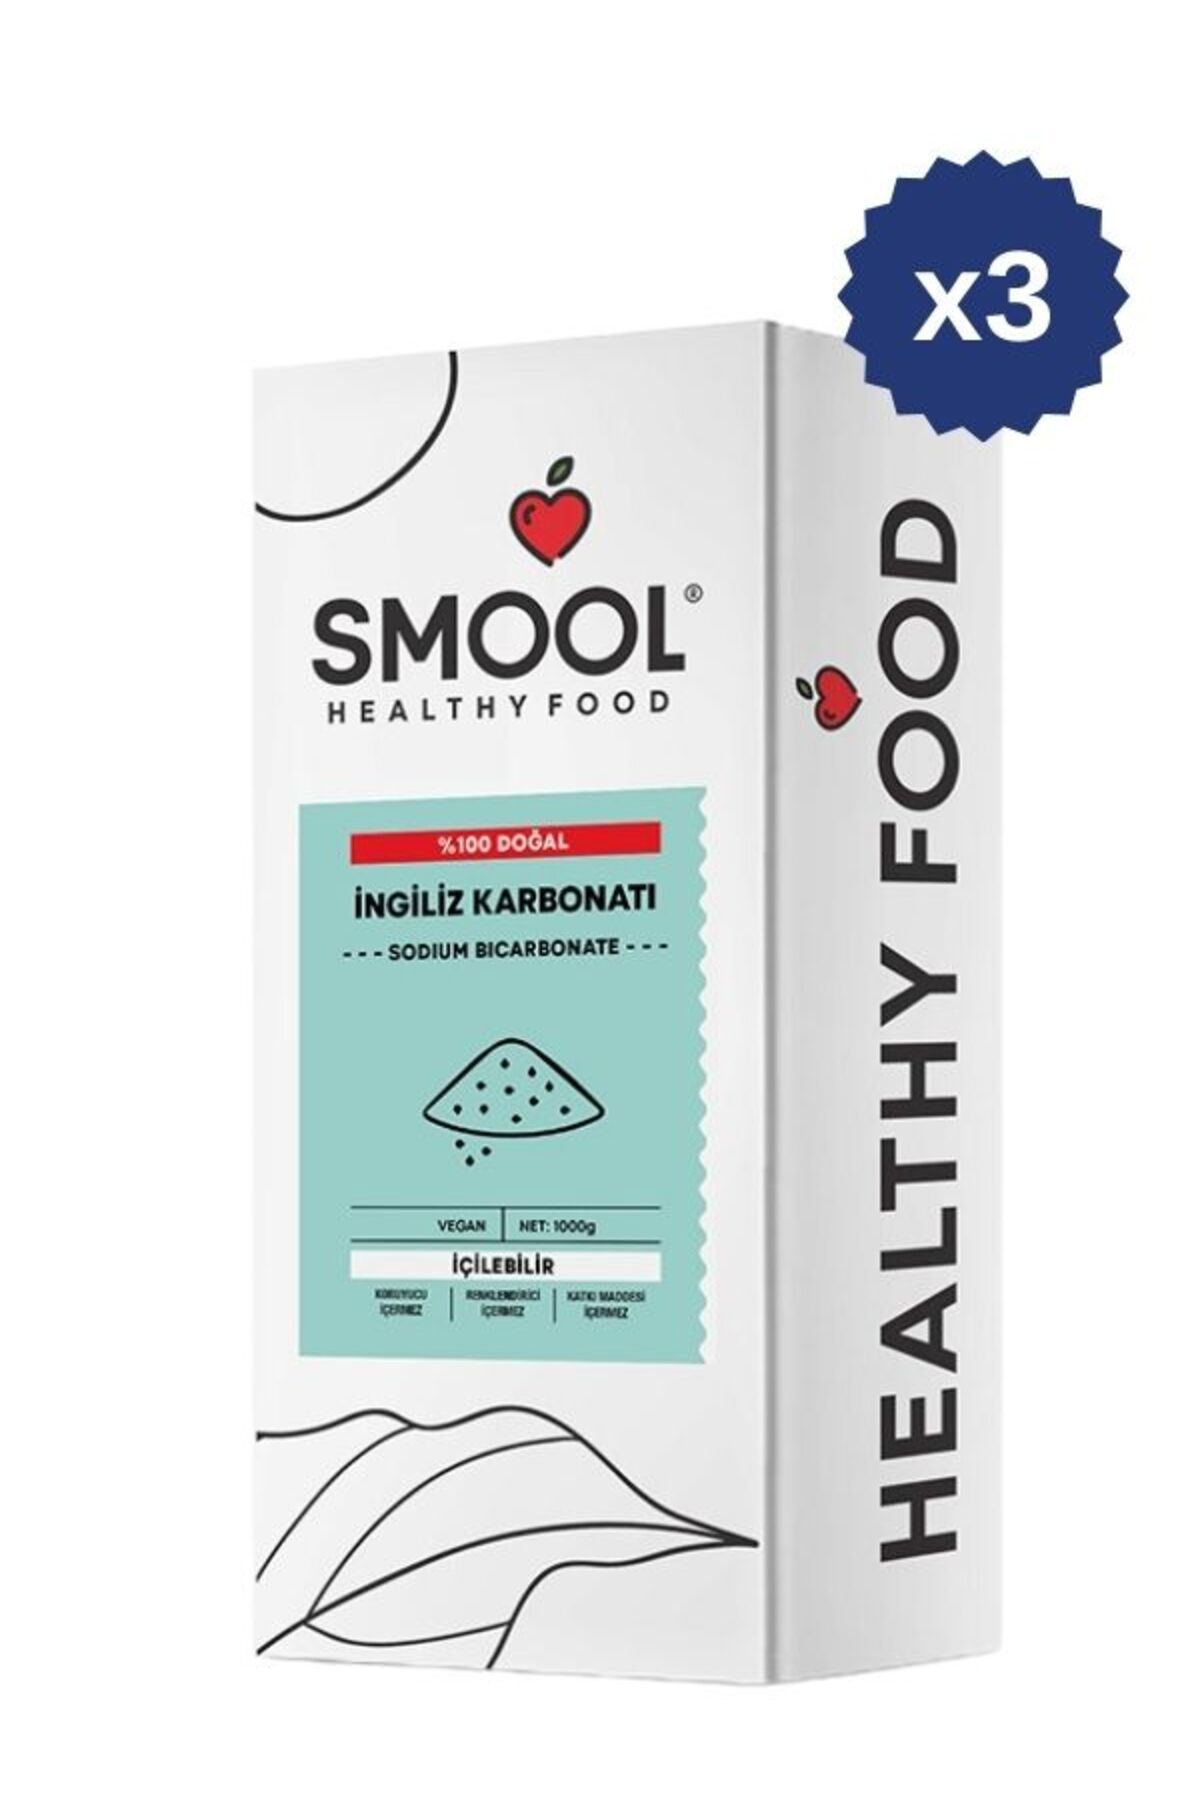 SMOOL İngiliz Karbonatı 1000 gr x3 İçilebilir, Katkısız, Doğal, Food Grade